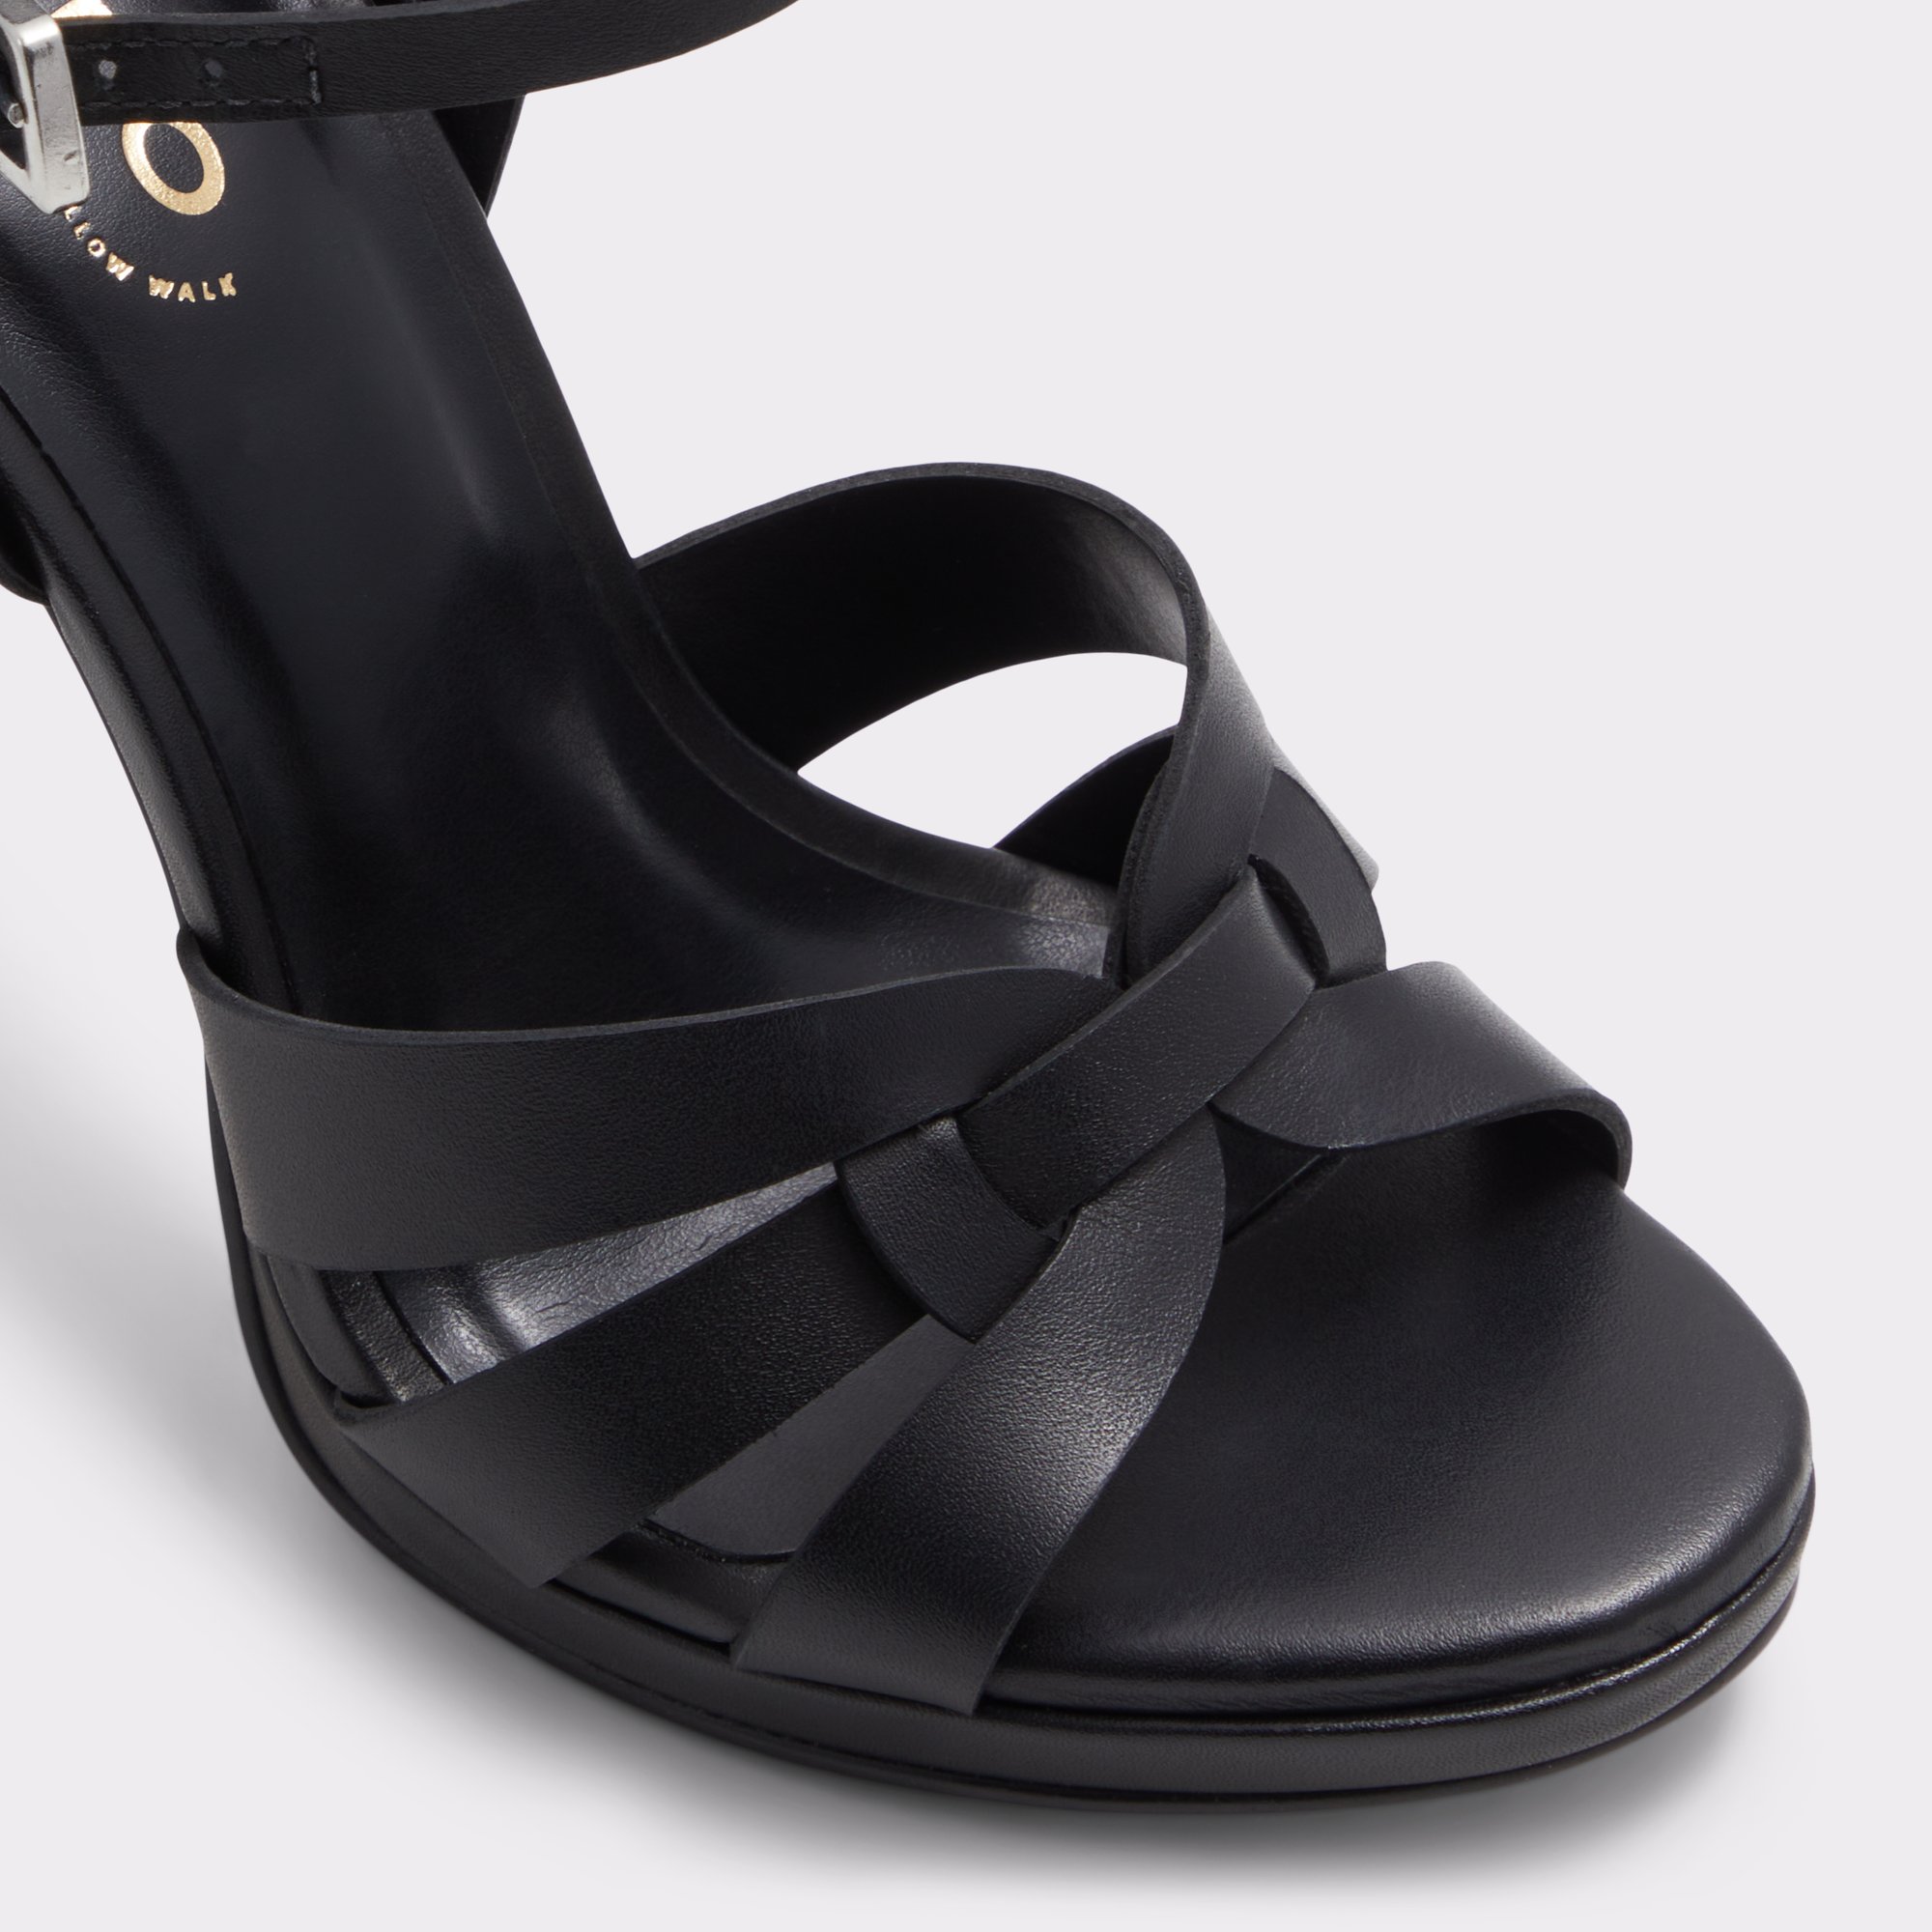 Afaoni Black Women's Strappy sandals | ALDO Canada